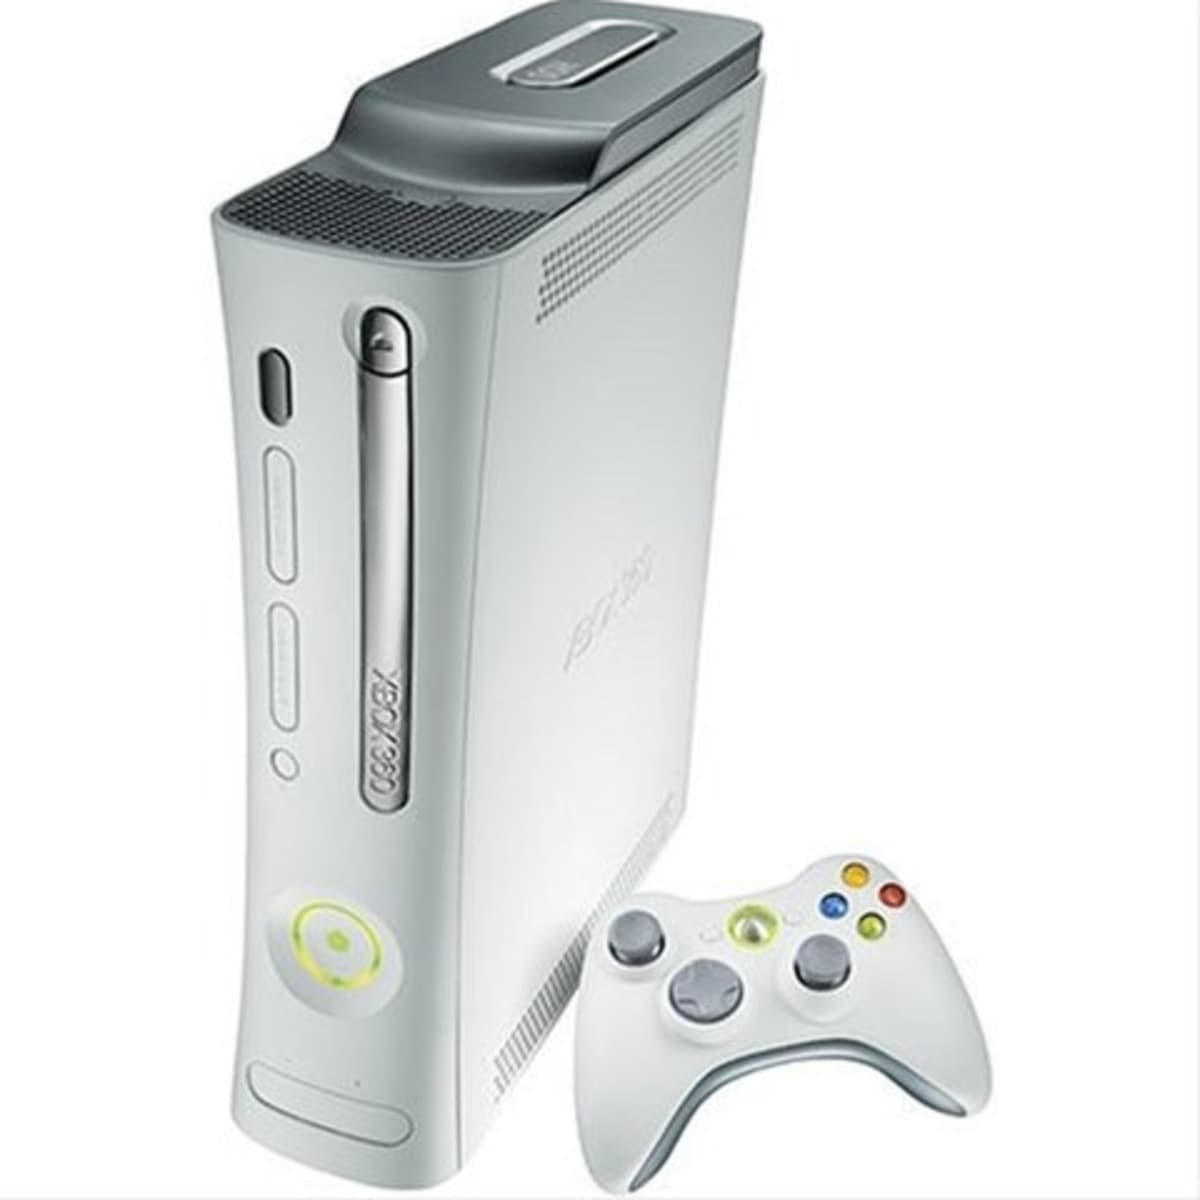 Integratie Afrekenen Coöperatie How to Stop Your Xbox 360 From Freezing - LevelSkip